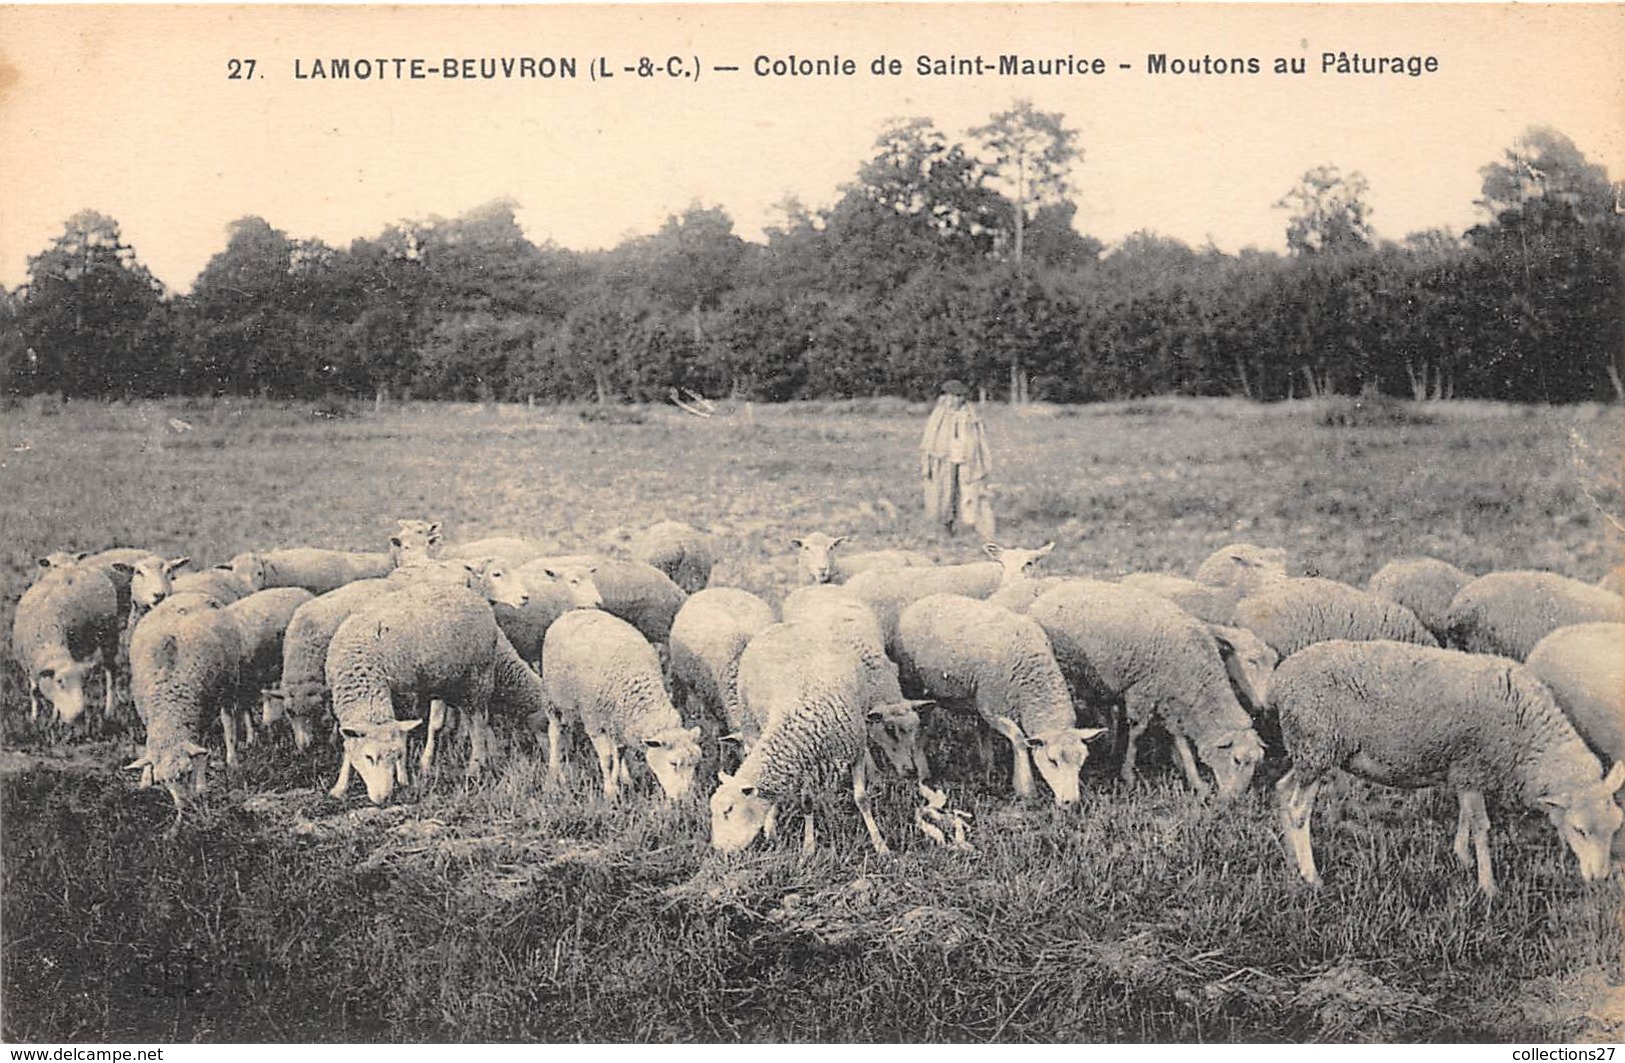 41-LAMOTTE-BEUVRON- COLONIE DE SAINT-MAURICE- MOUTONS AU PÂTURAGE - Lamotte Beuvron